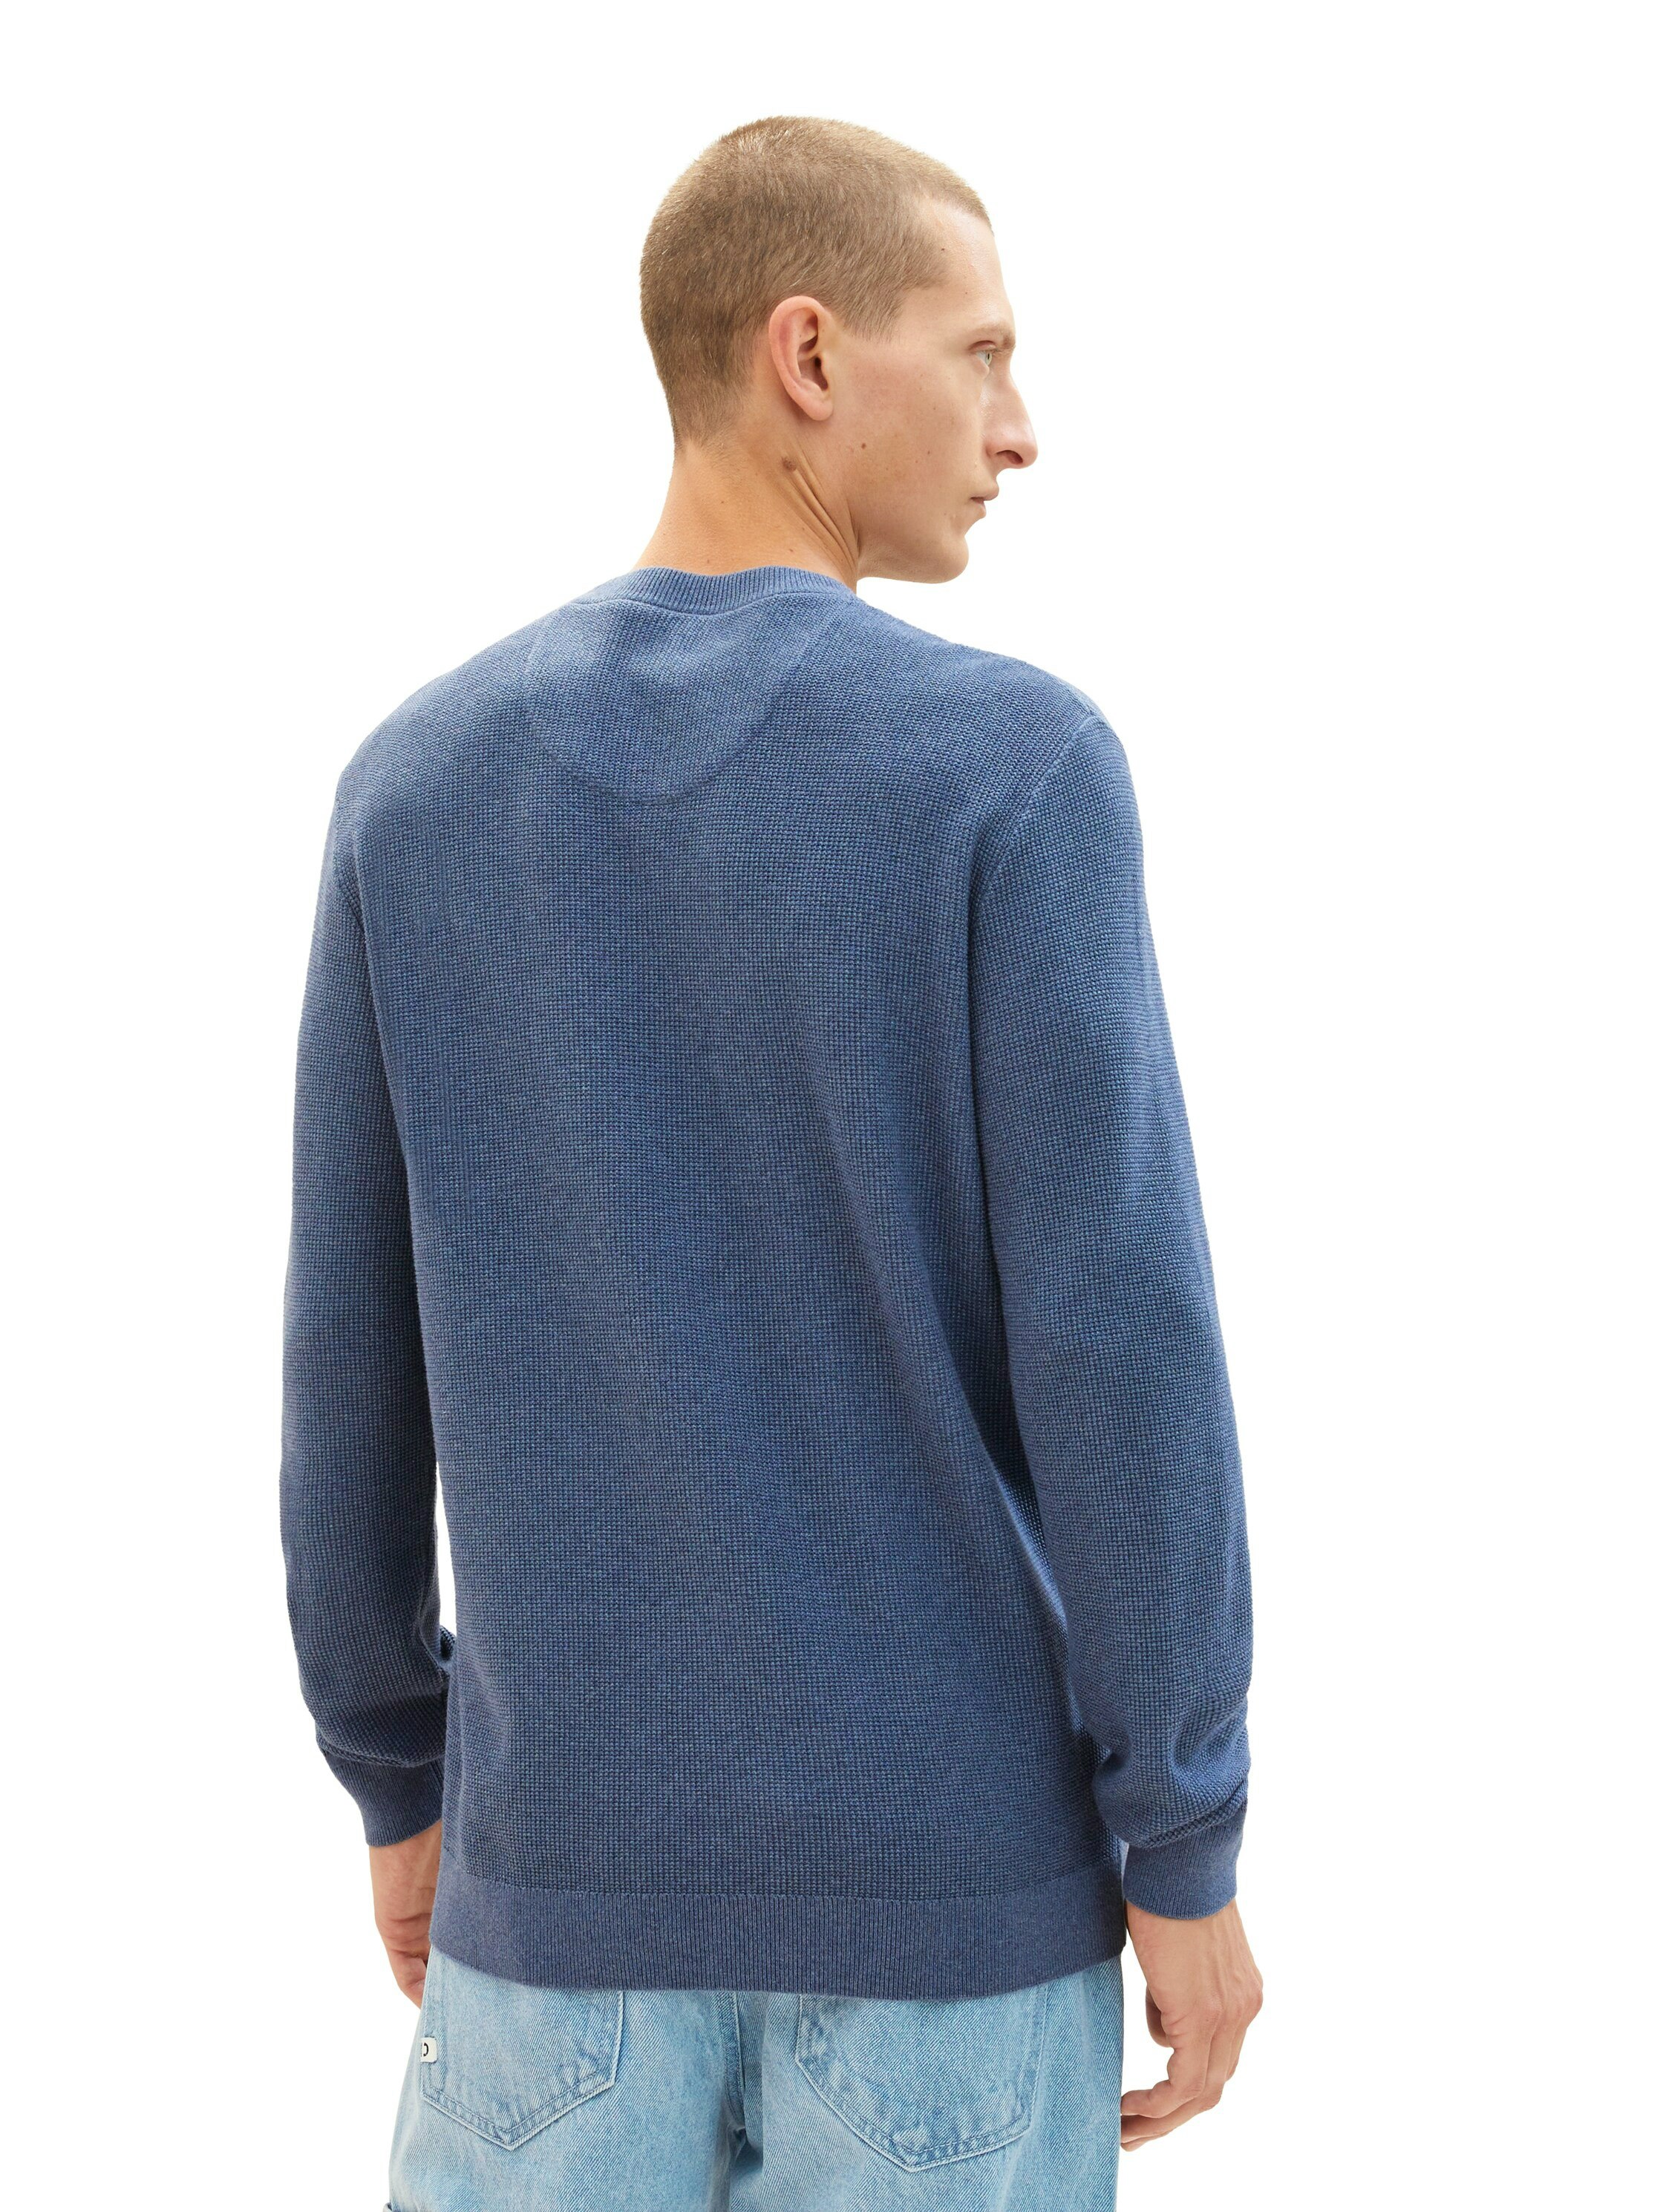 Rundhalspullover Structured Tailor in blau Knit Tom